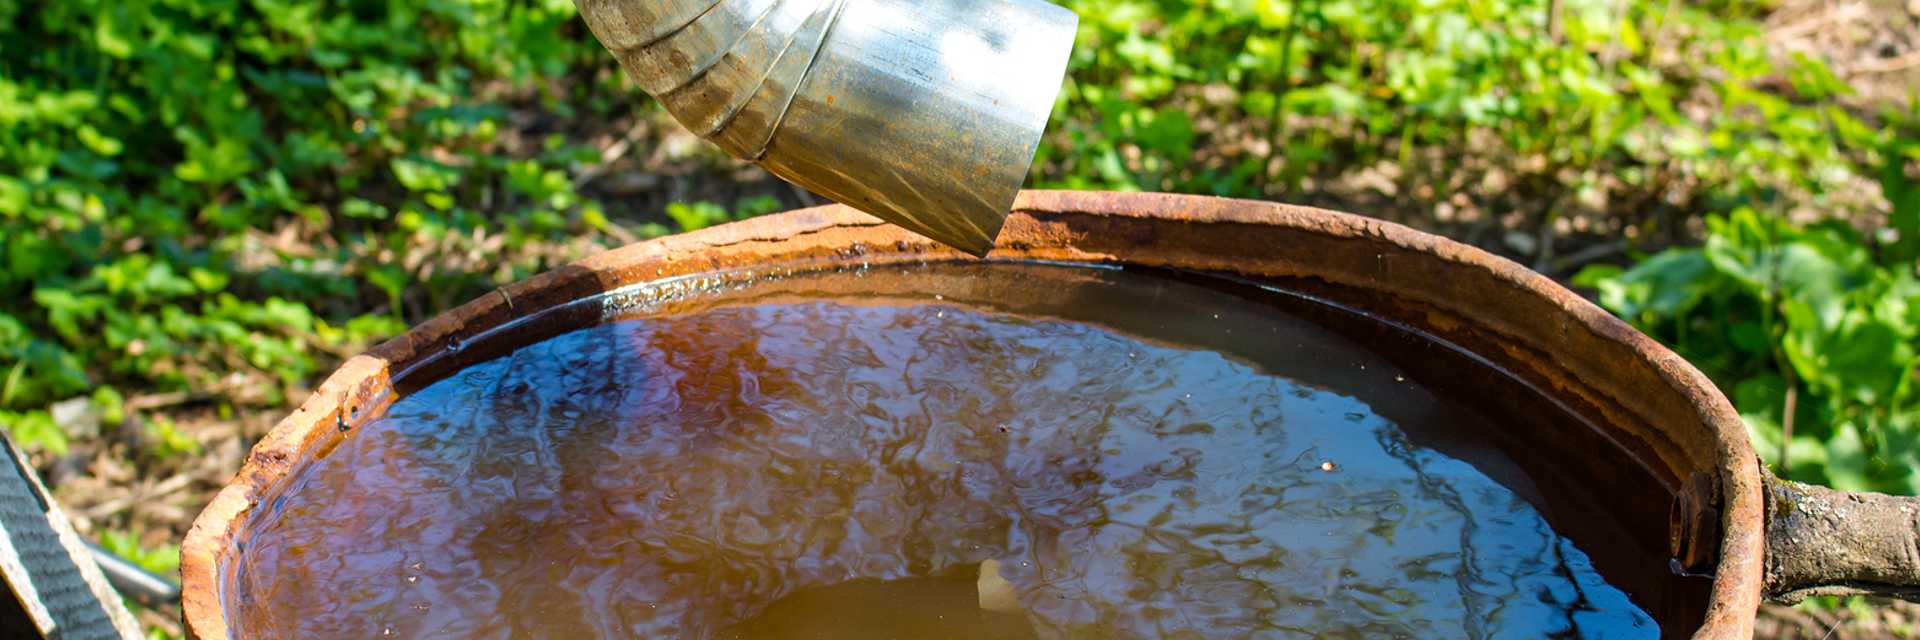 Regenwasser-Aufbereitung (Bigstockphoto)